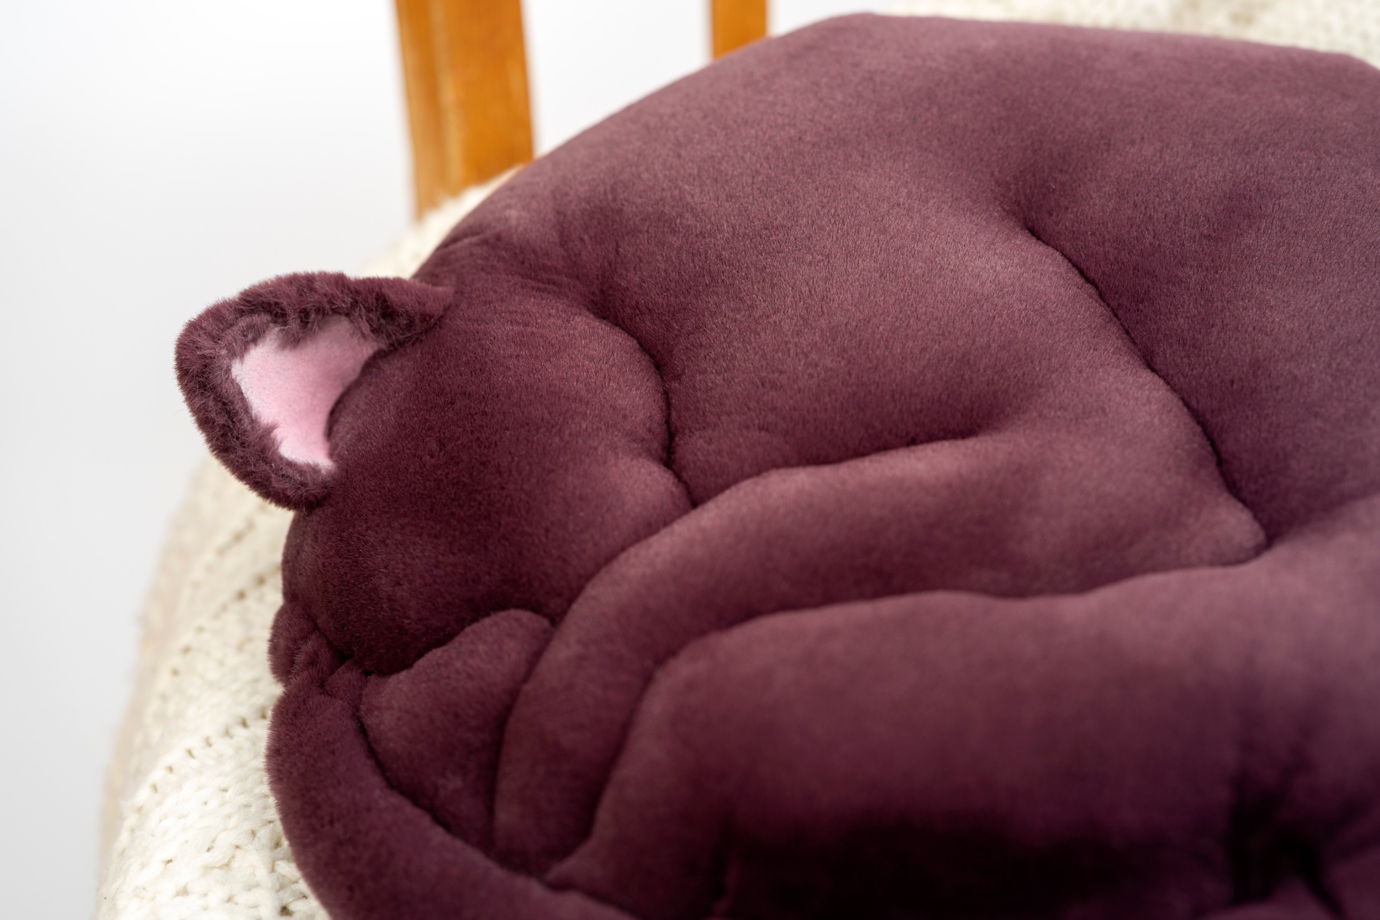 круглая подушка спящий кот ручной работы из эко-меха